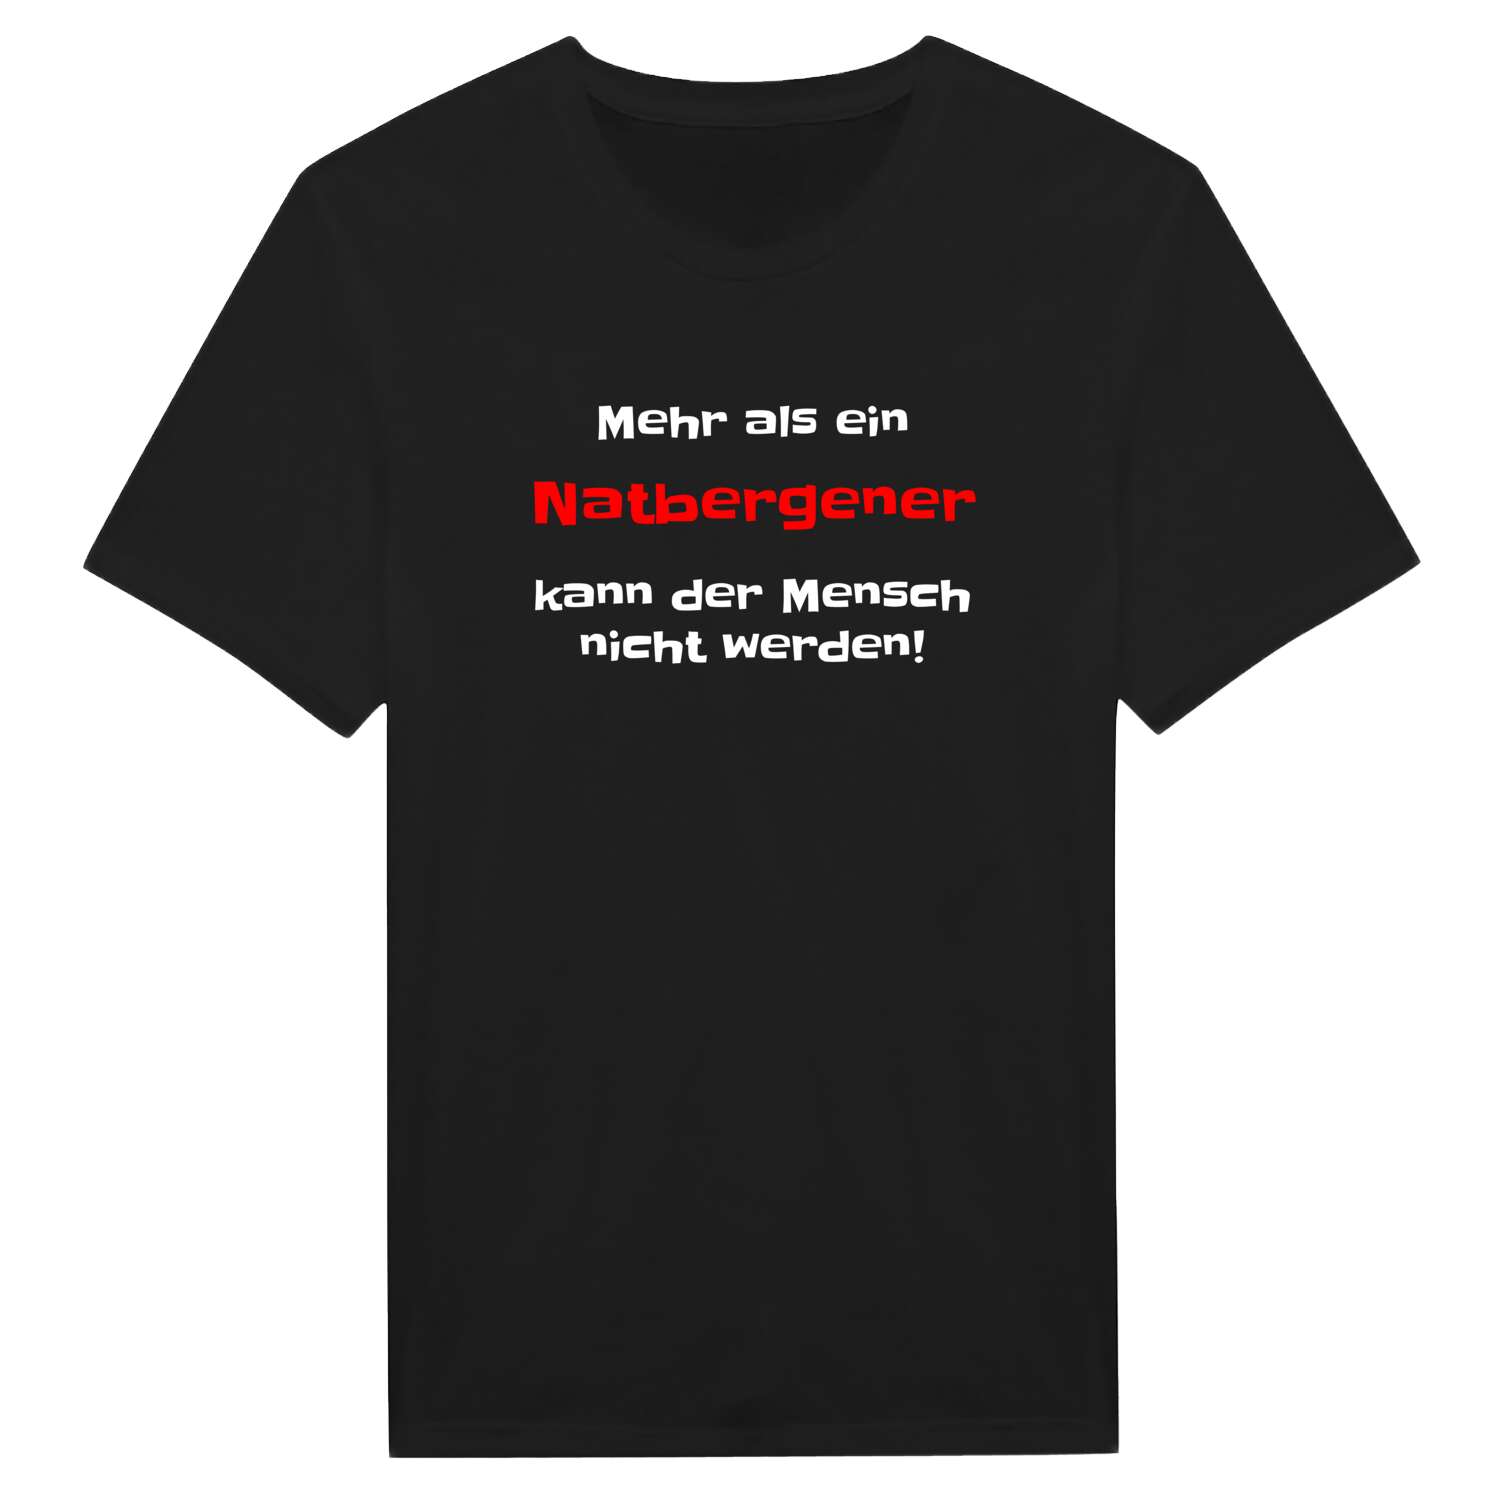 Natbergen T-Shirt »Mehr als ein«